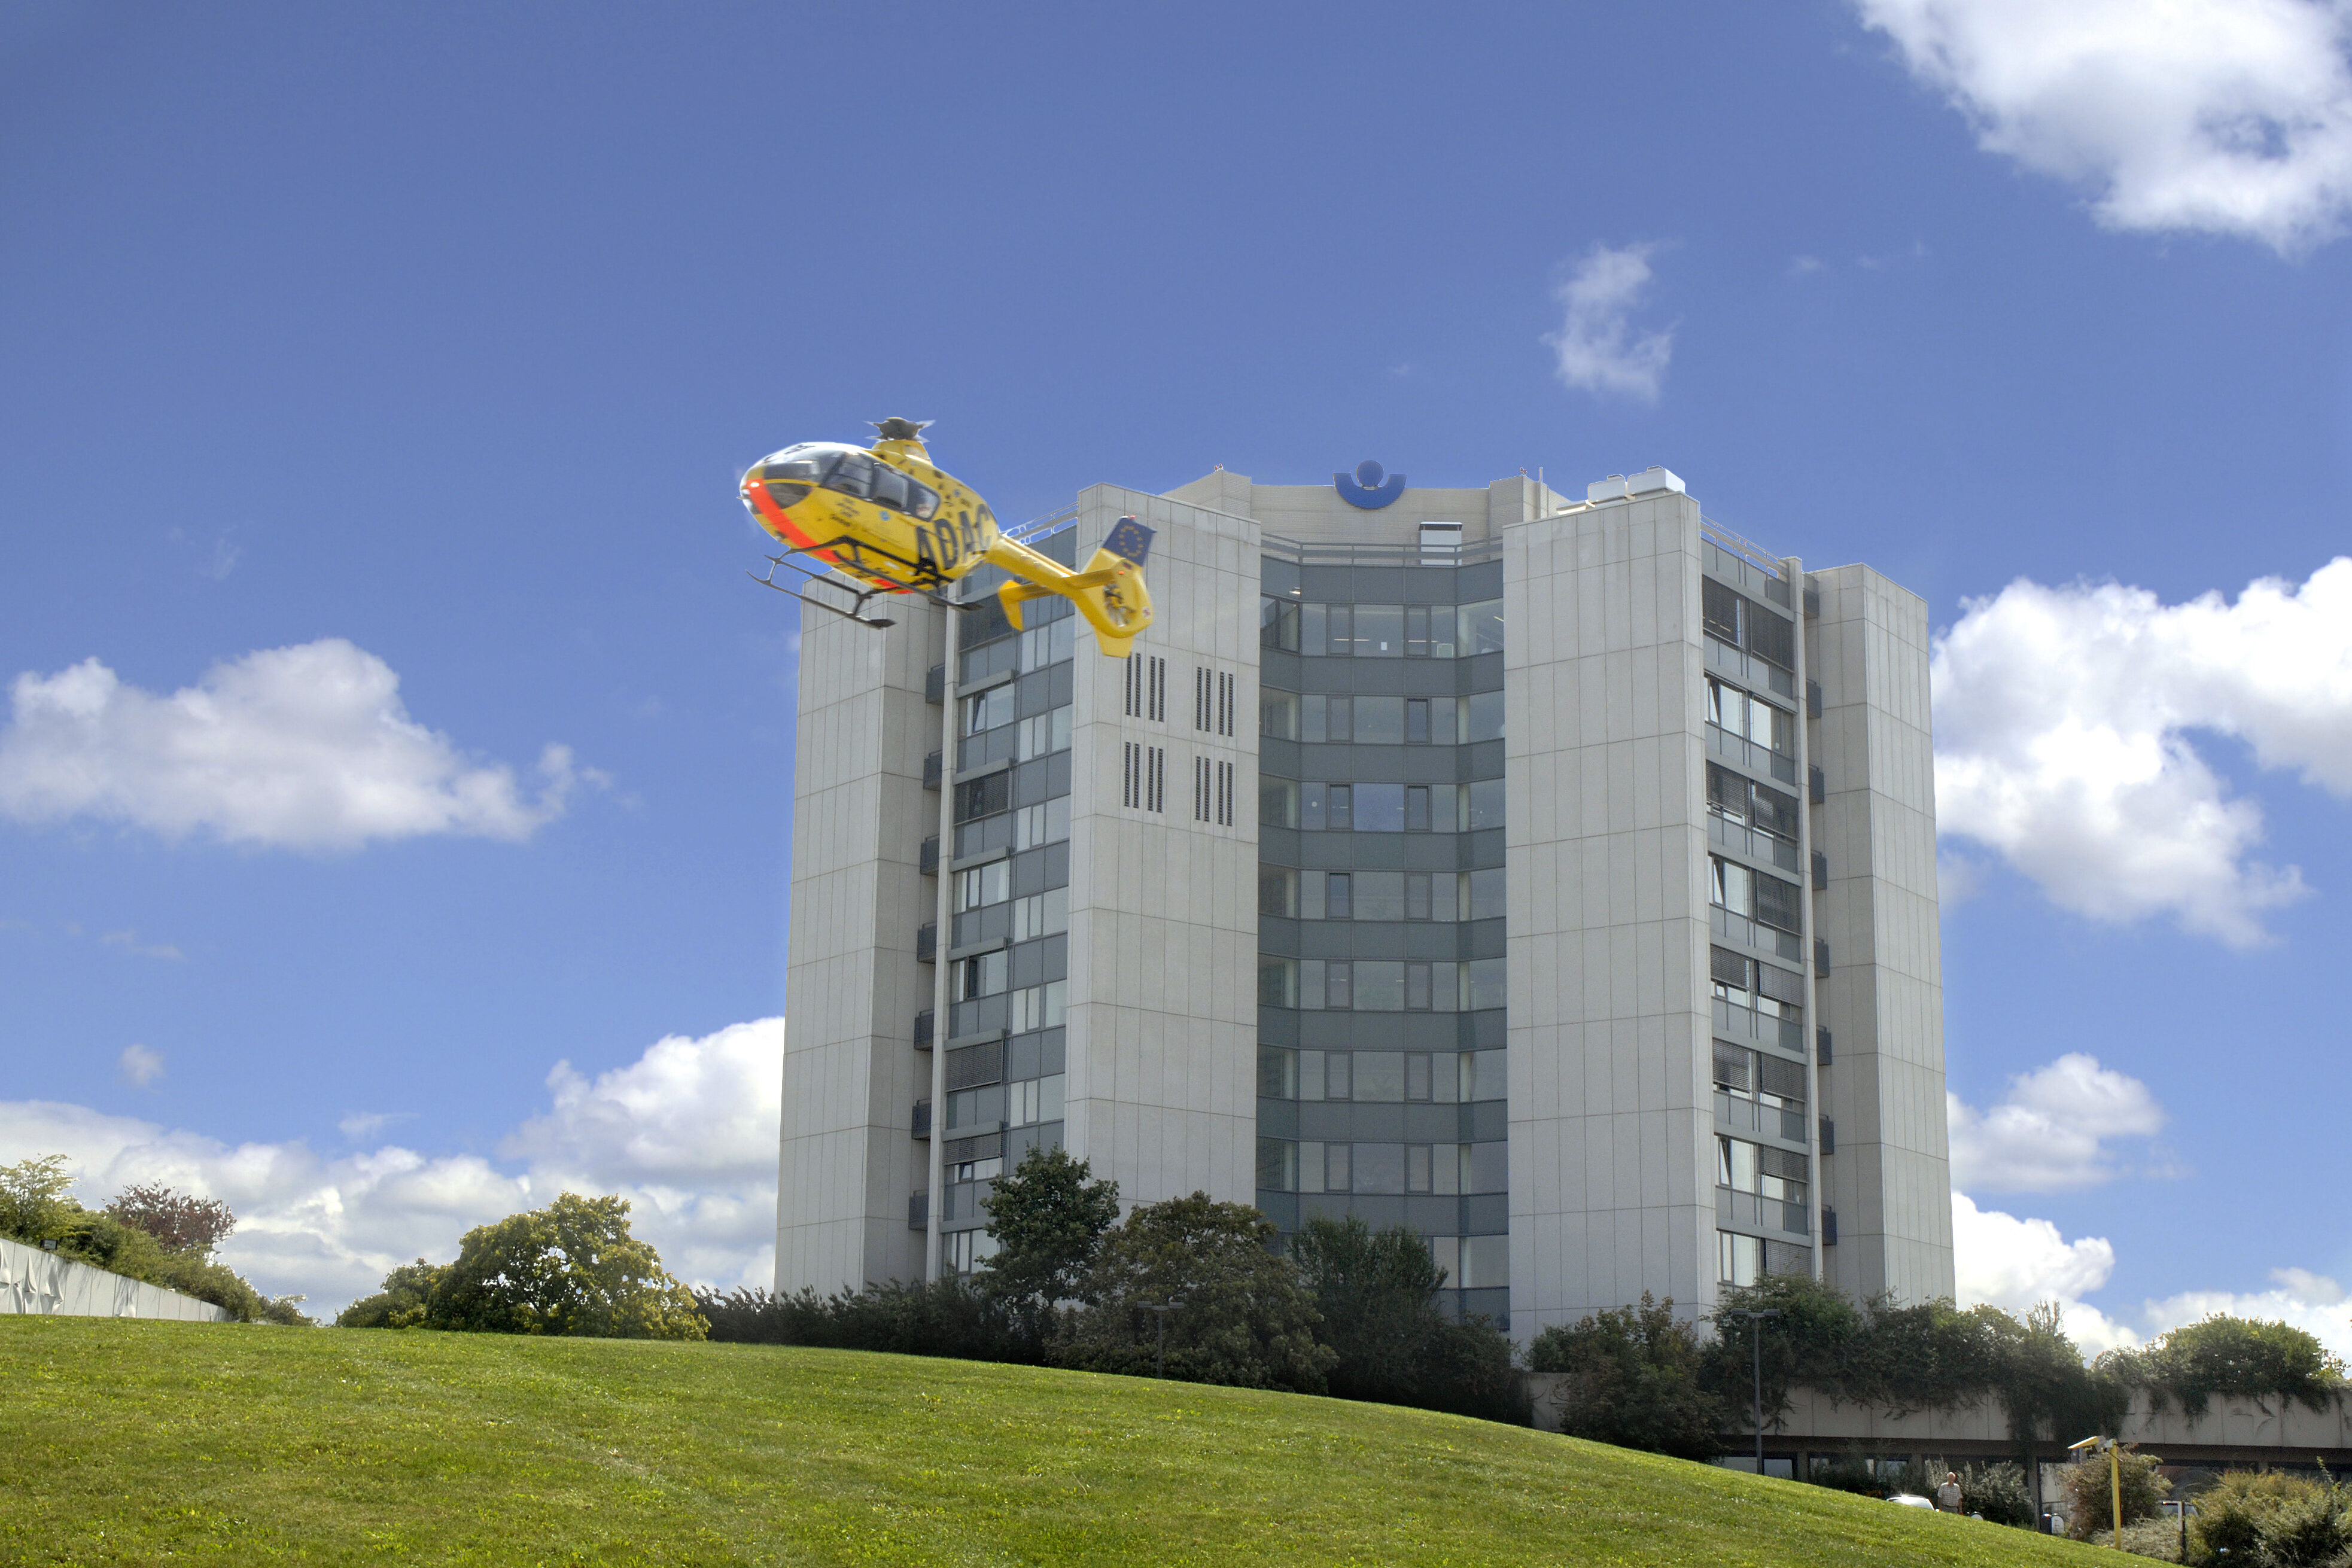 Das Gebäude der BG Klinik Ludwigshafen mit dem ADAC-Hubschrauber im Vordergrund